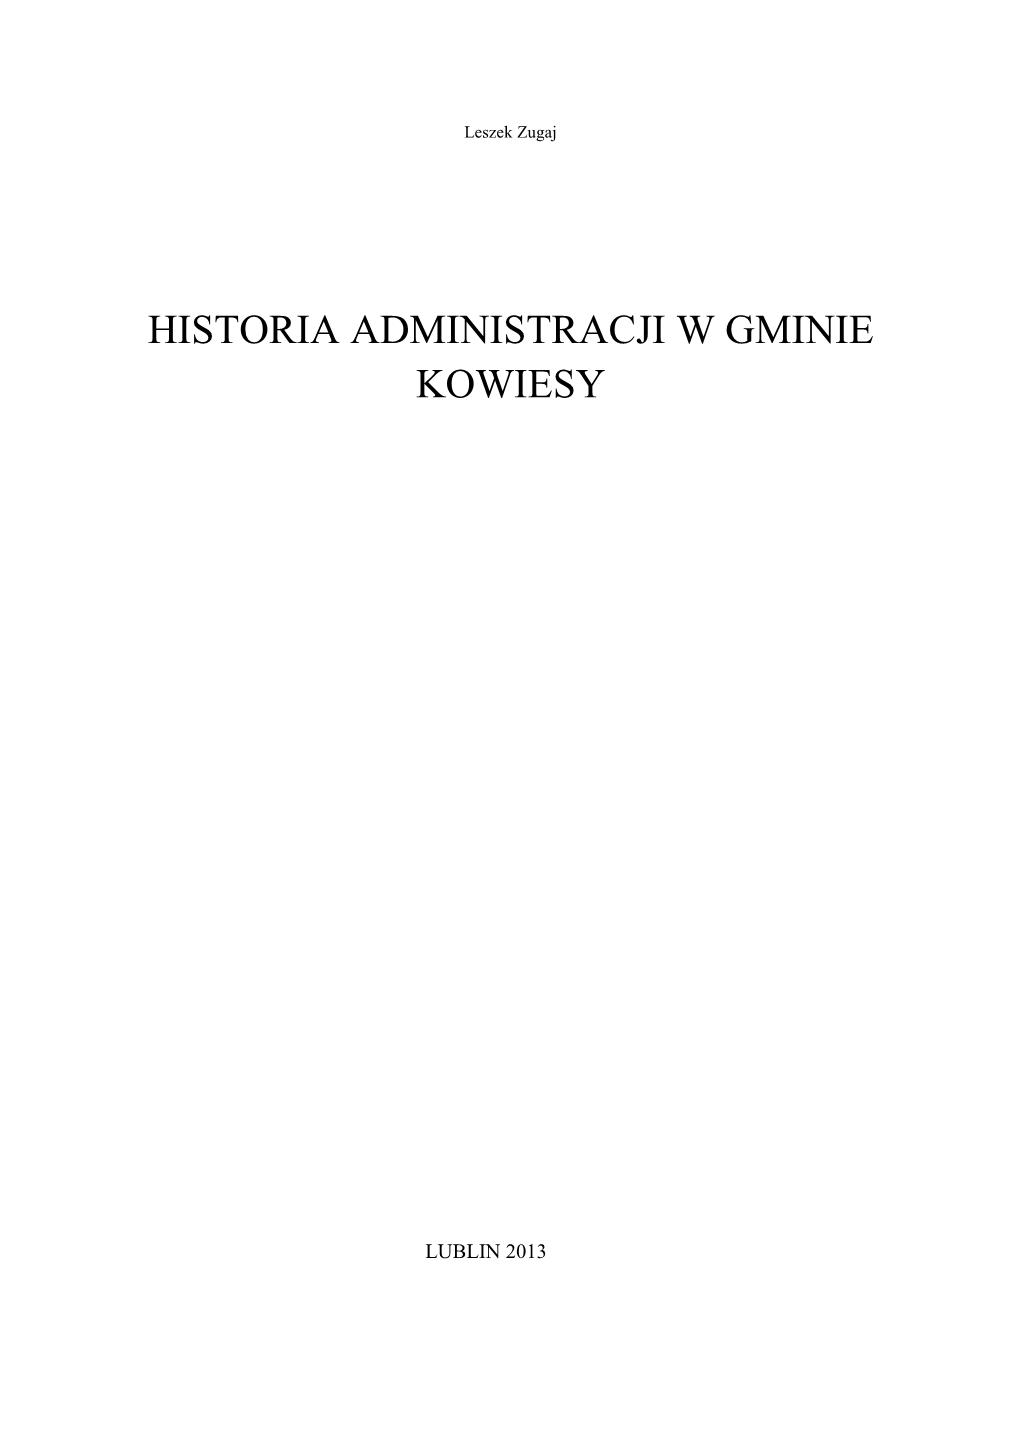 Historia Administracji W Gminie Kowiesy